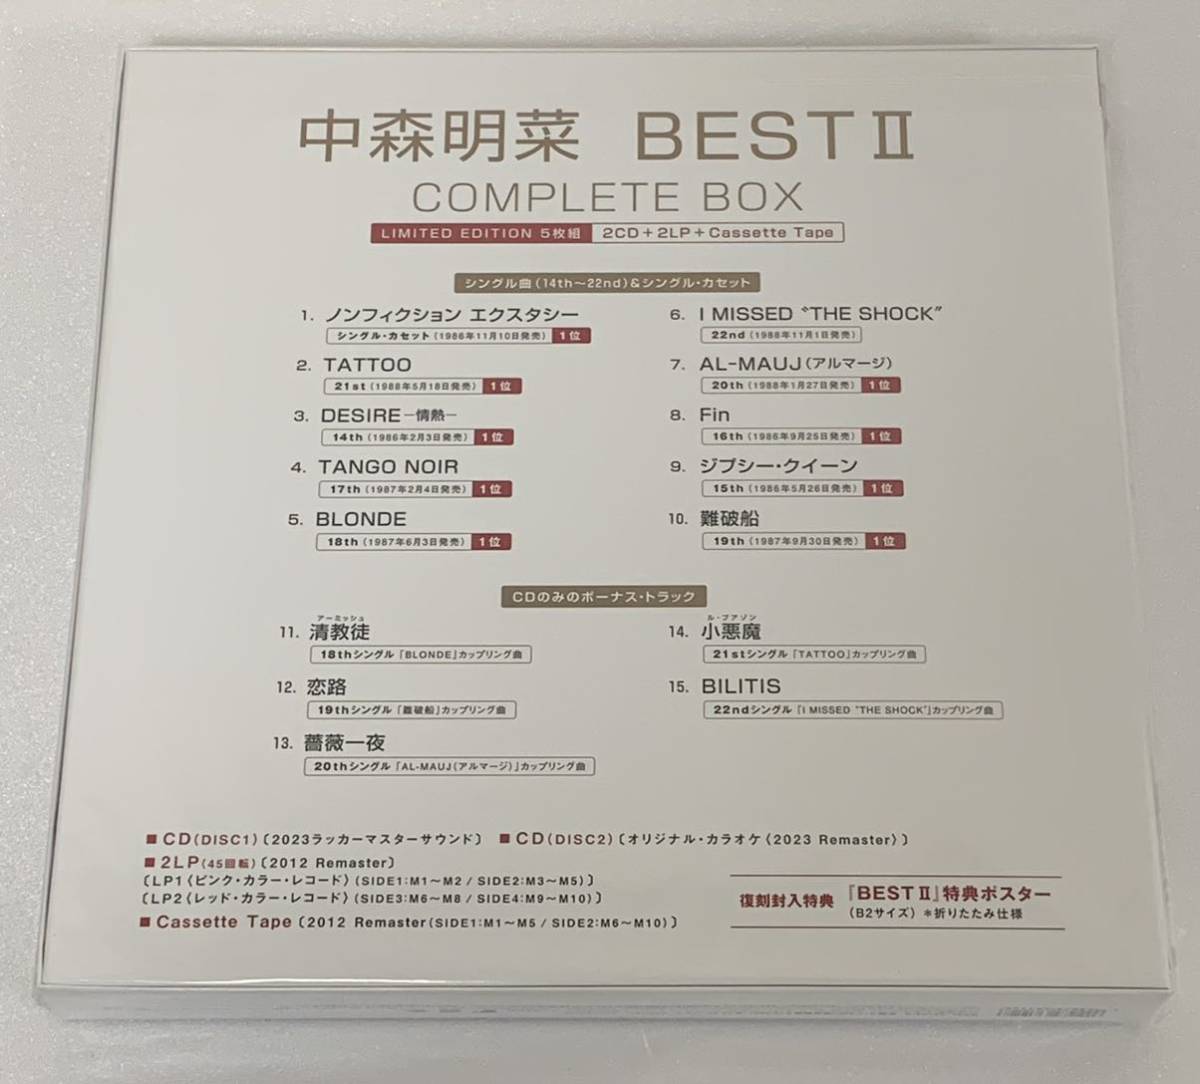 新品 中森明菜 BEST Ⅱ COMPLETE BOX 5枚組 完全生産限定盤 (2CD+2LP+Cassette Tape)_画像2